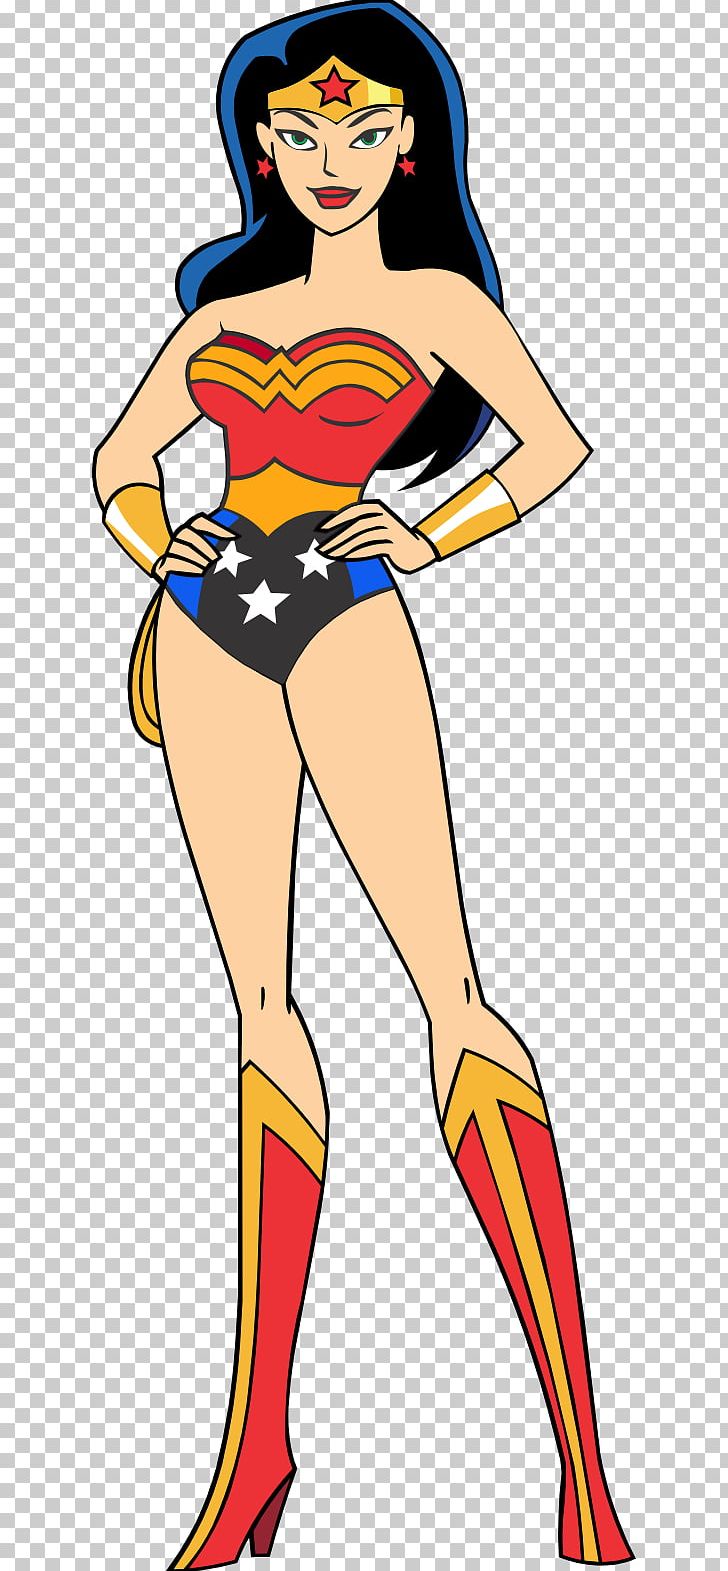 Superman/Wonder Woman Superman/Wonder Woman Superhero Comics PNG, Clipart, Arm, Art, Artwork, Clothing, Comics Free PNG Download